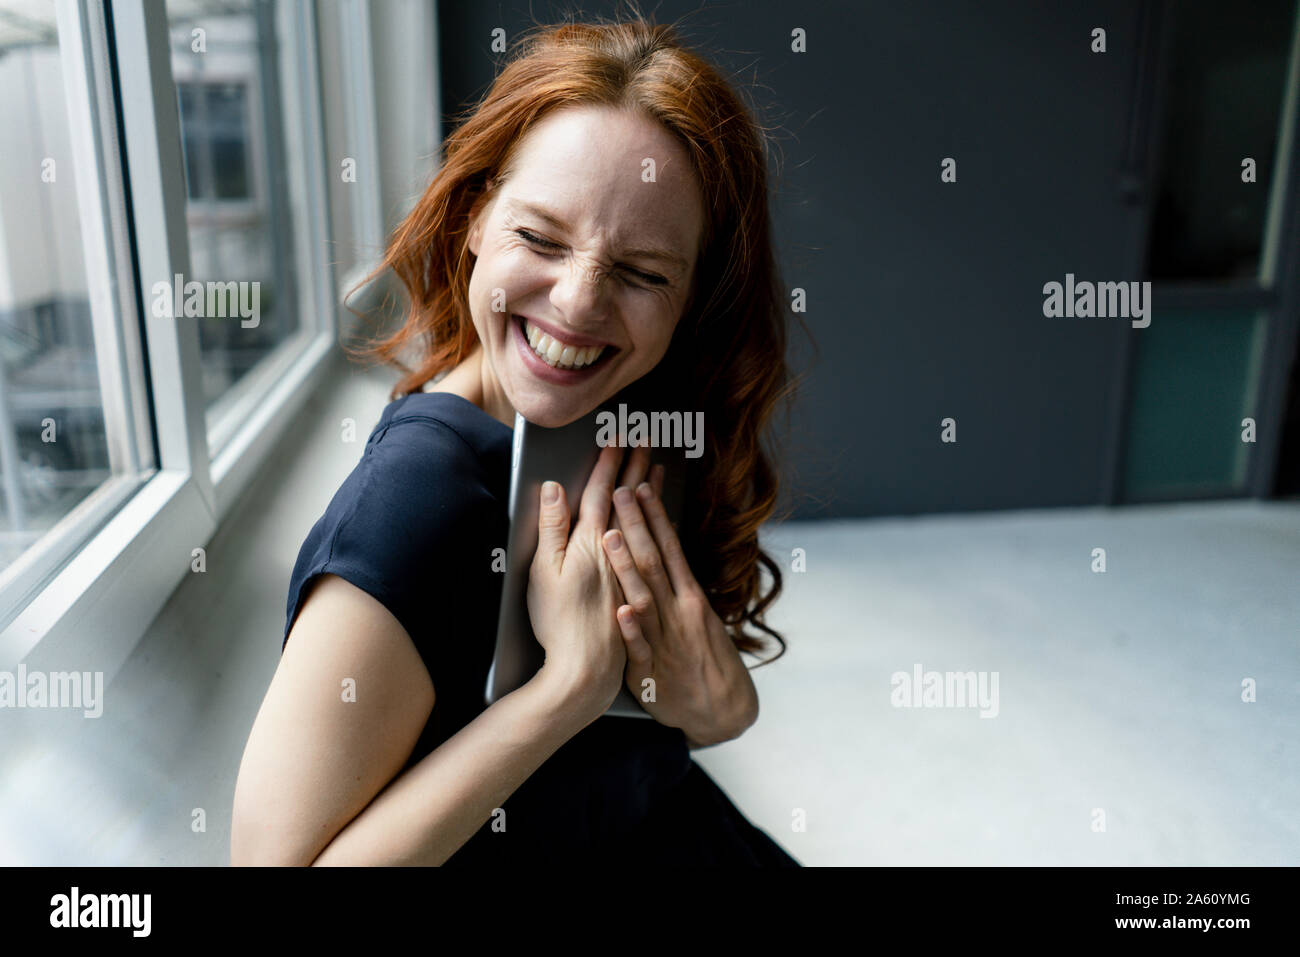 Portrait de femme rousse riant avec tablette numérique dans un loft Banque D'Images